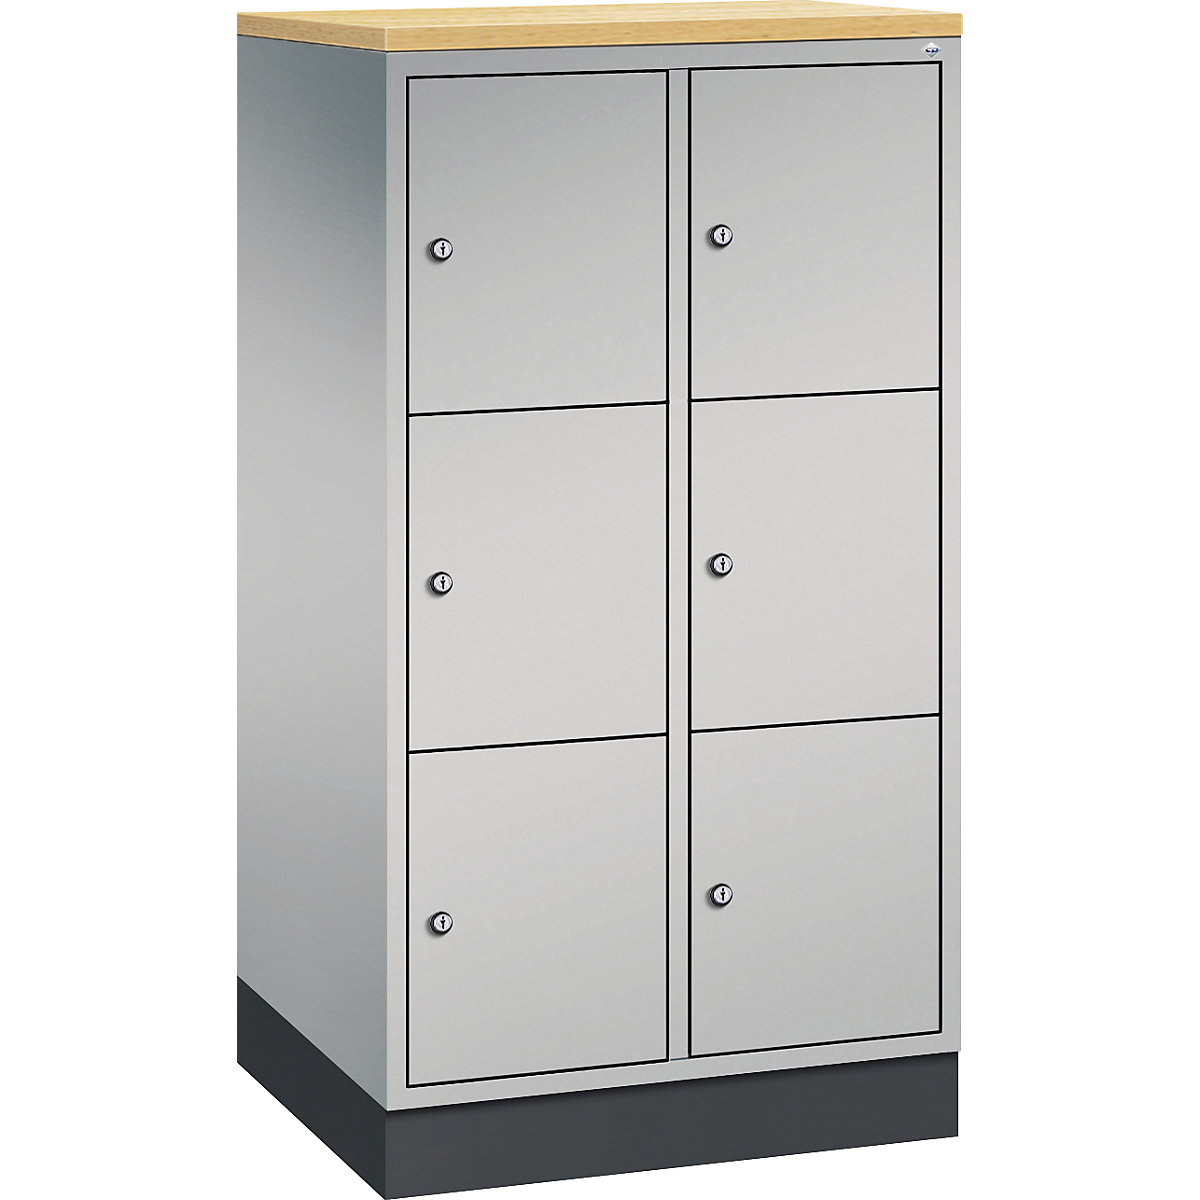 INTRO steel compartment locker, compartment height 345 mm – C+P, WxD 620 x 500 mm, 6 compartments, white aluminium body, white aluminium doors